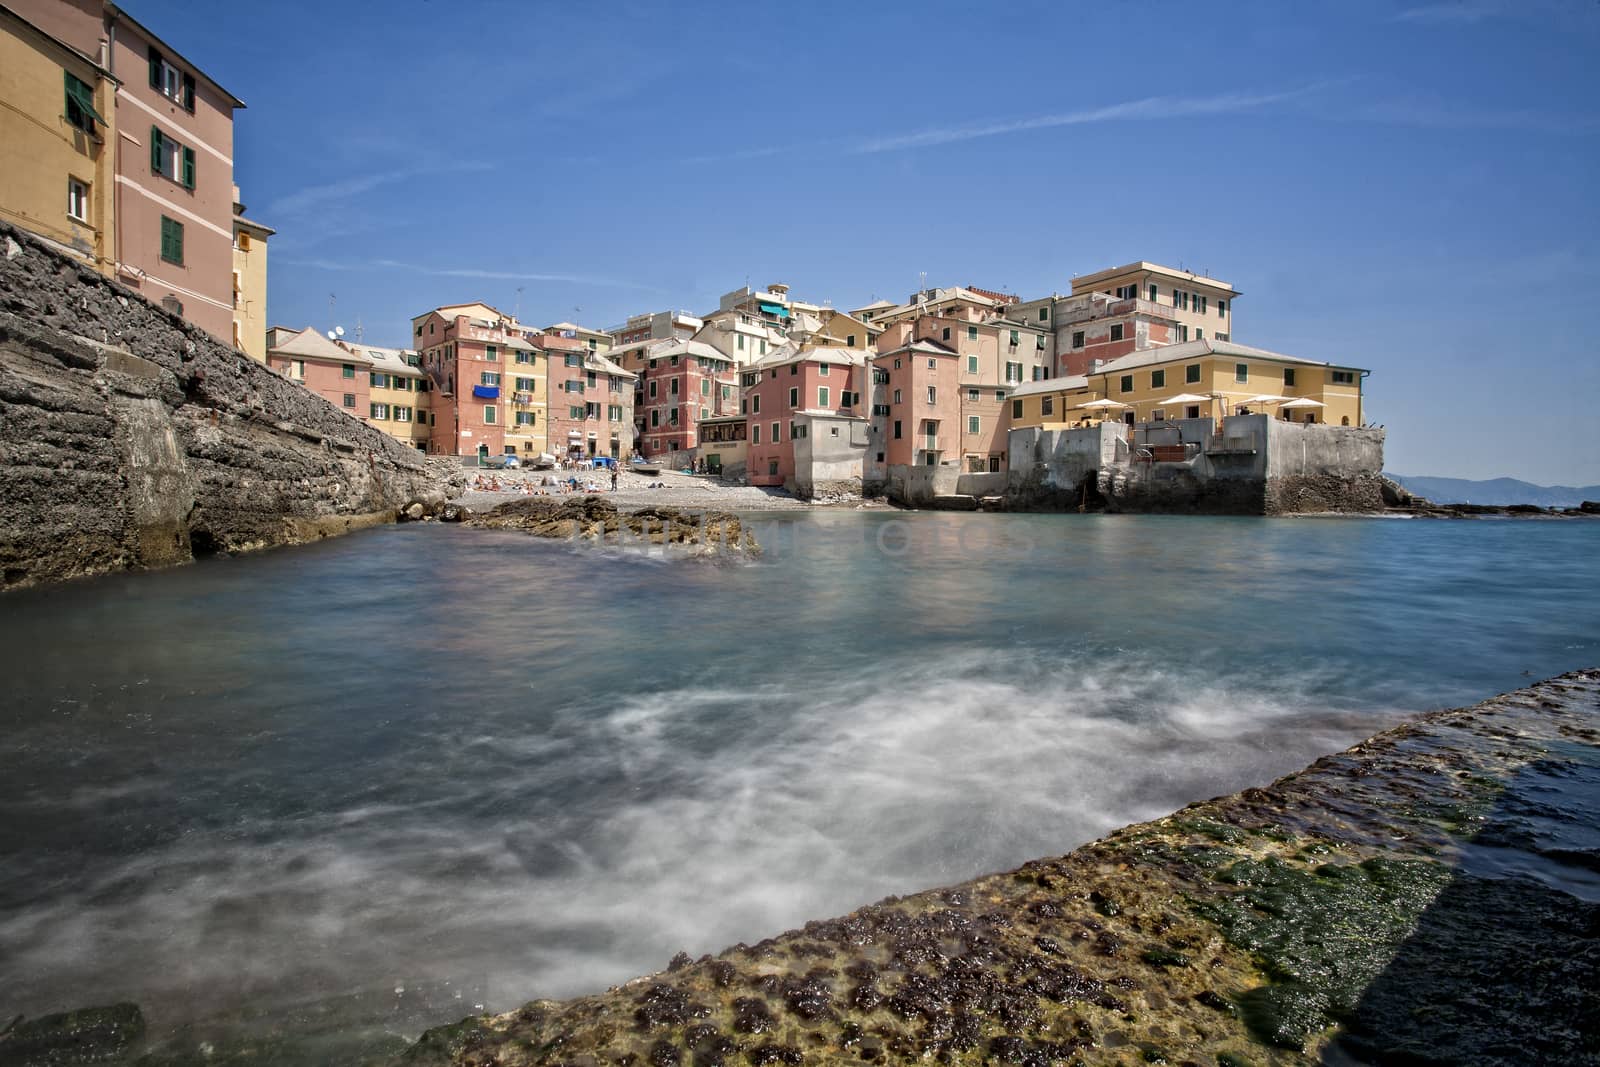 Boccadasse, Genoa, Italy, typical mediaterranean village